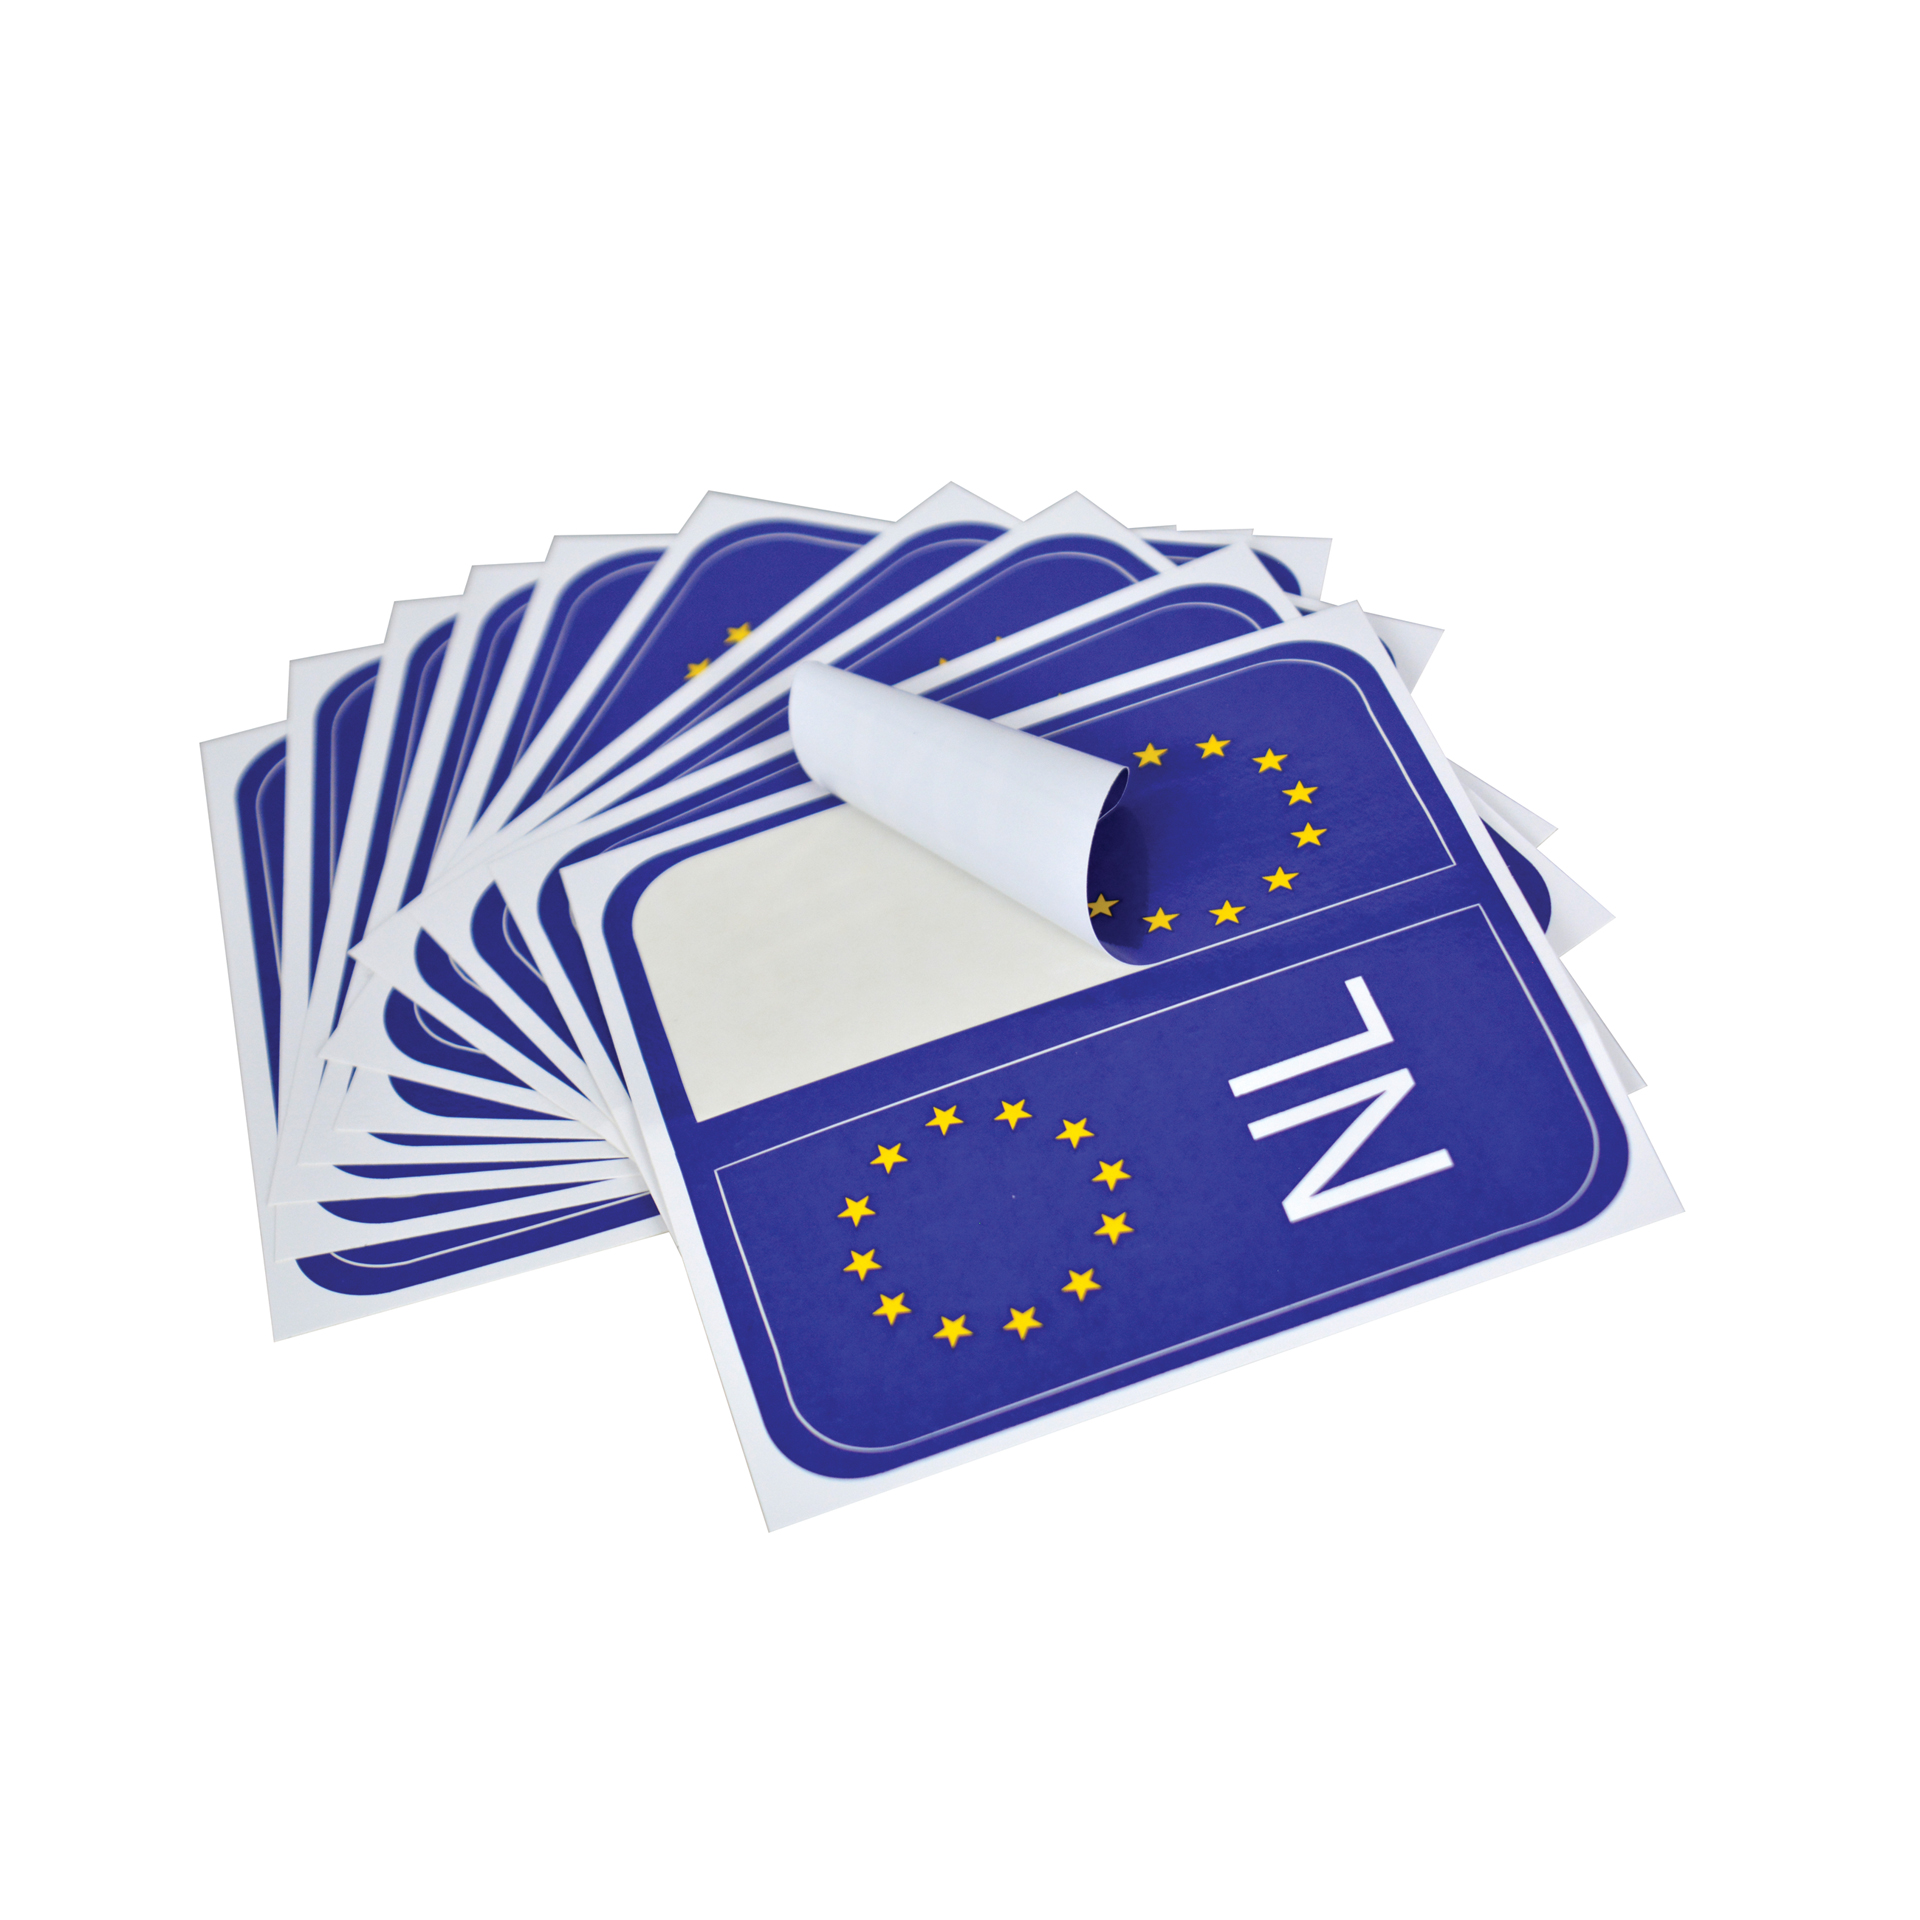 Carpoint NL/EU nummerplaatsticker (10vel x 2) 1316052